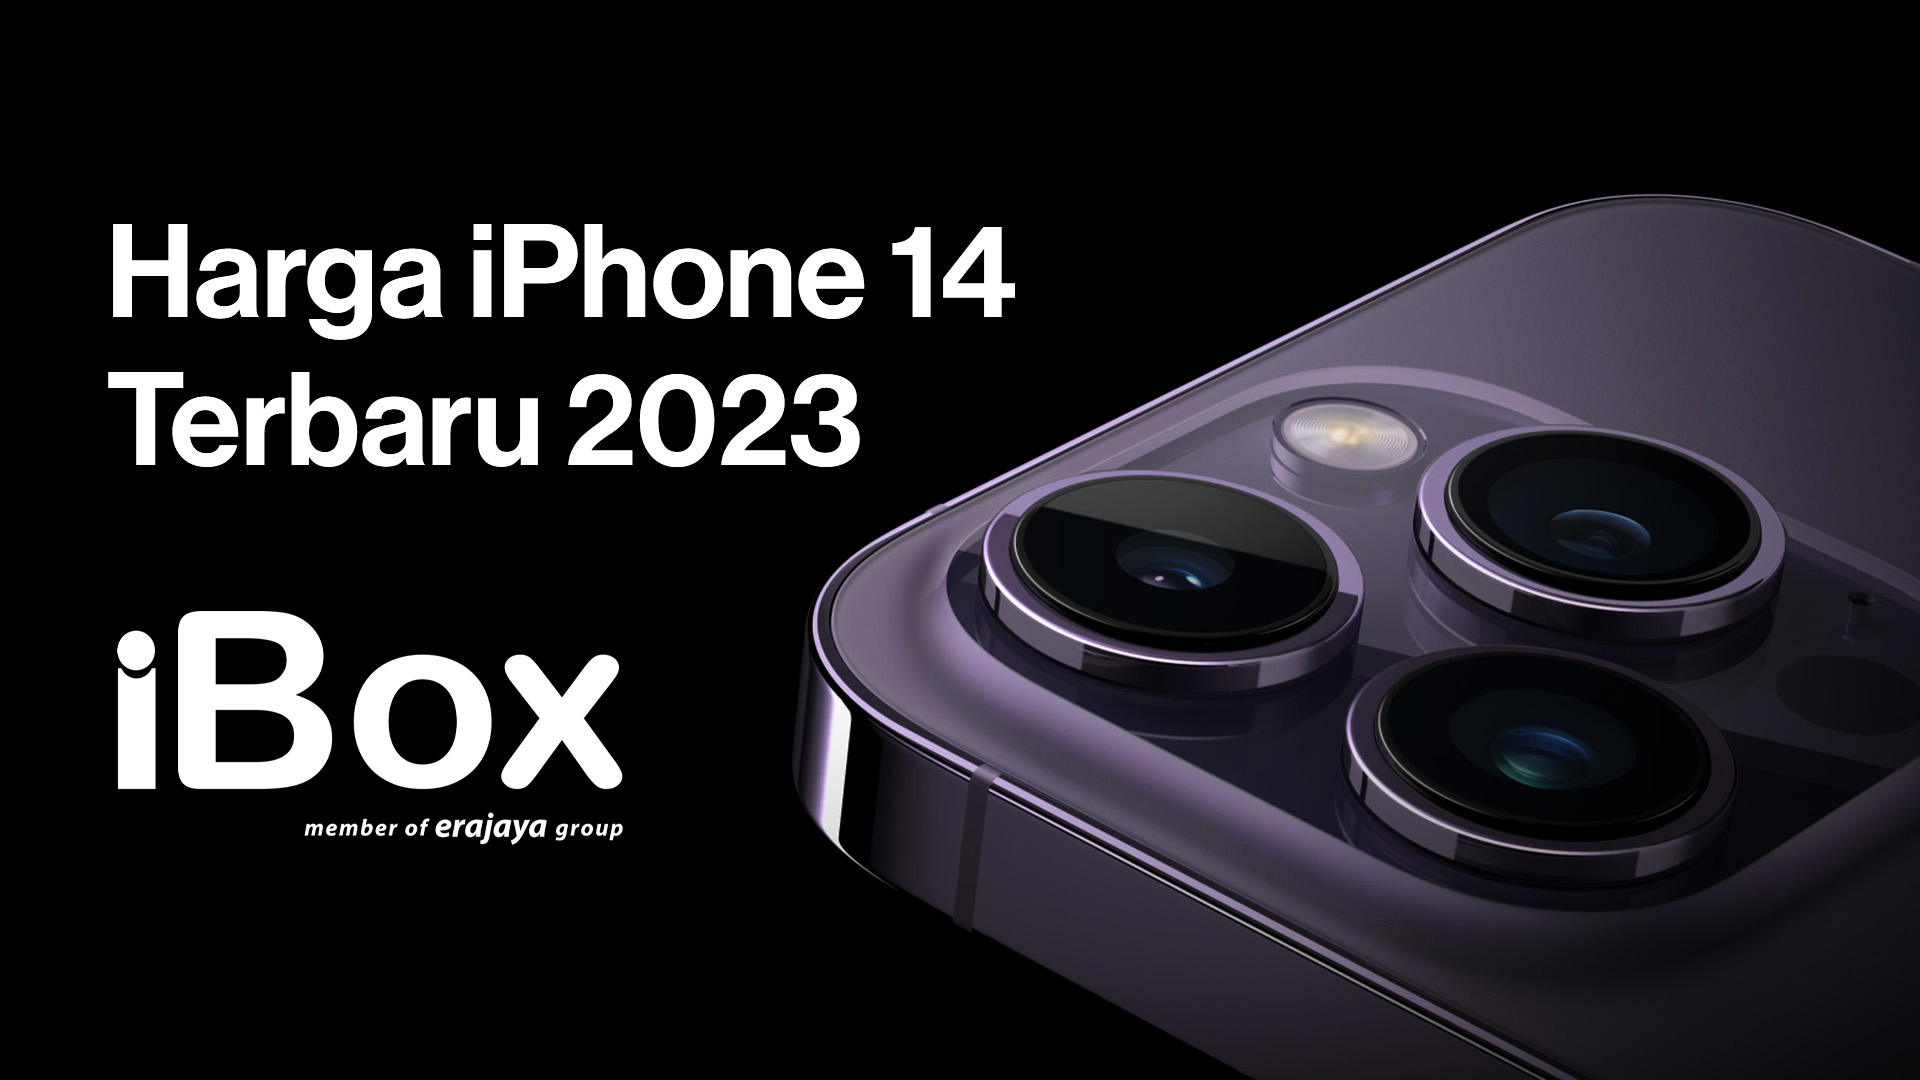 Berapa Harga iPhone 14 Pro Max? Berikut Update Harga iPhone 14 dan iPhone 14 Pro Family Terbaru 2023